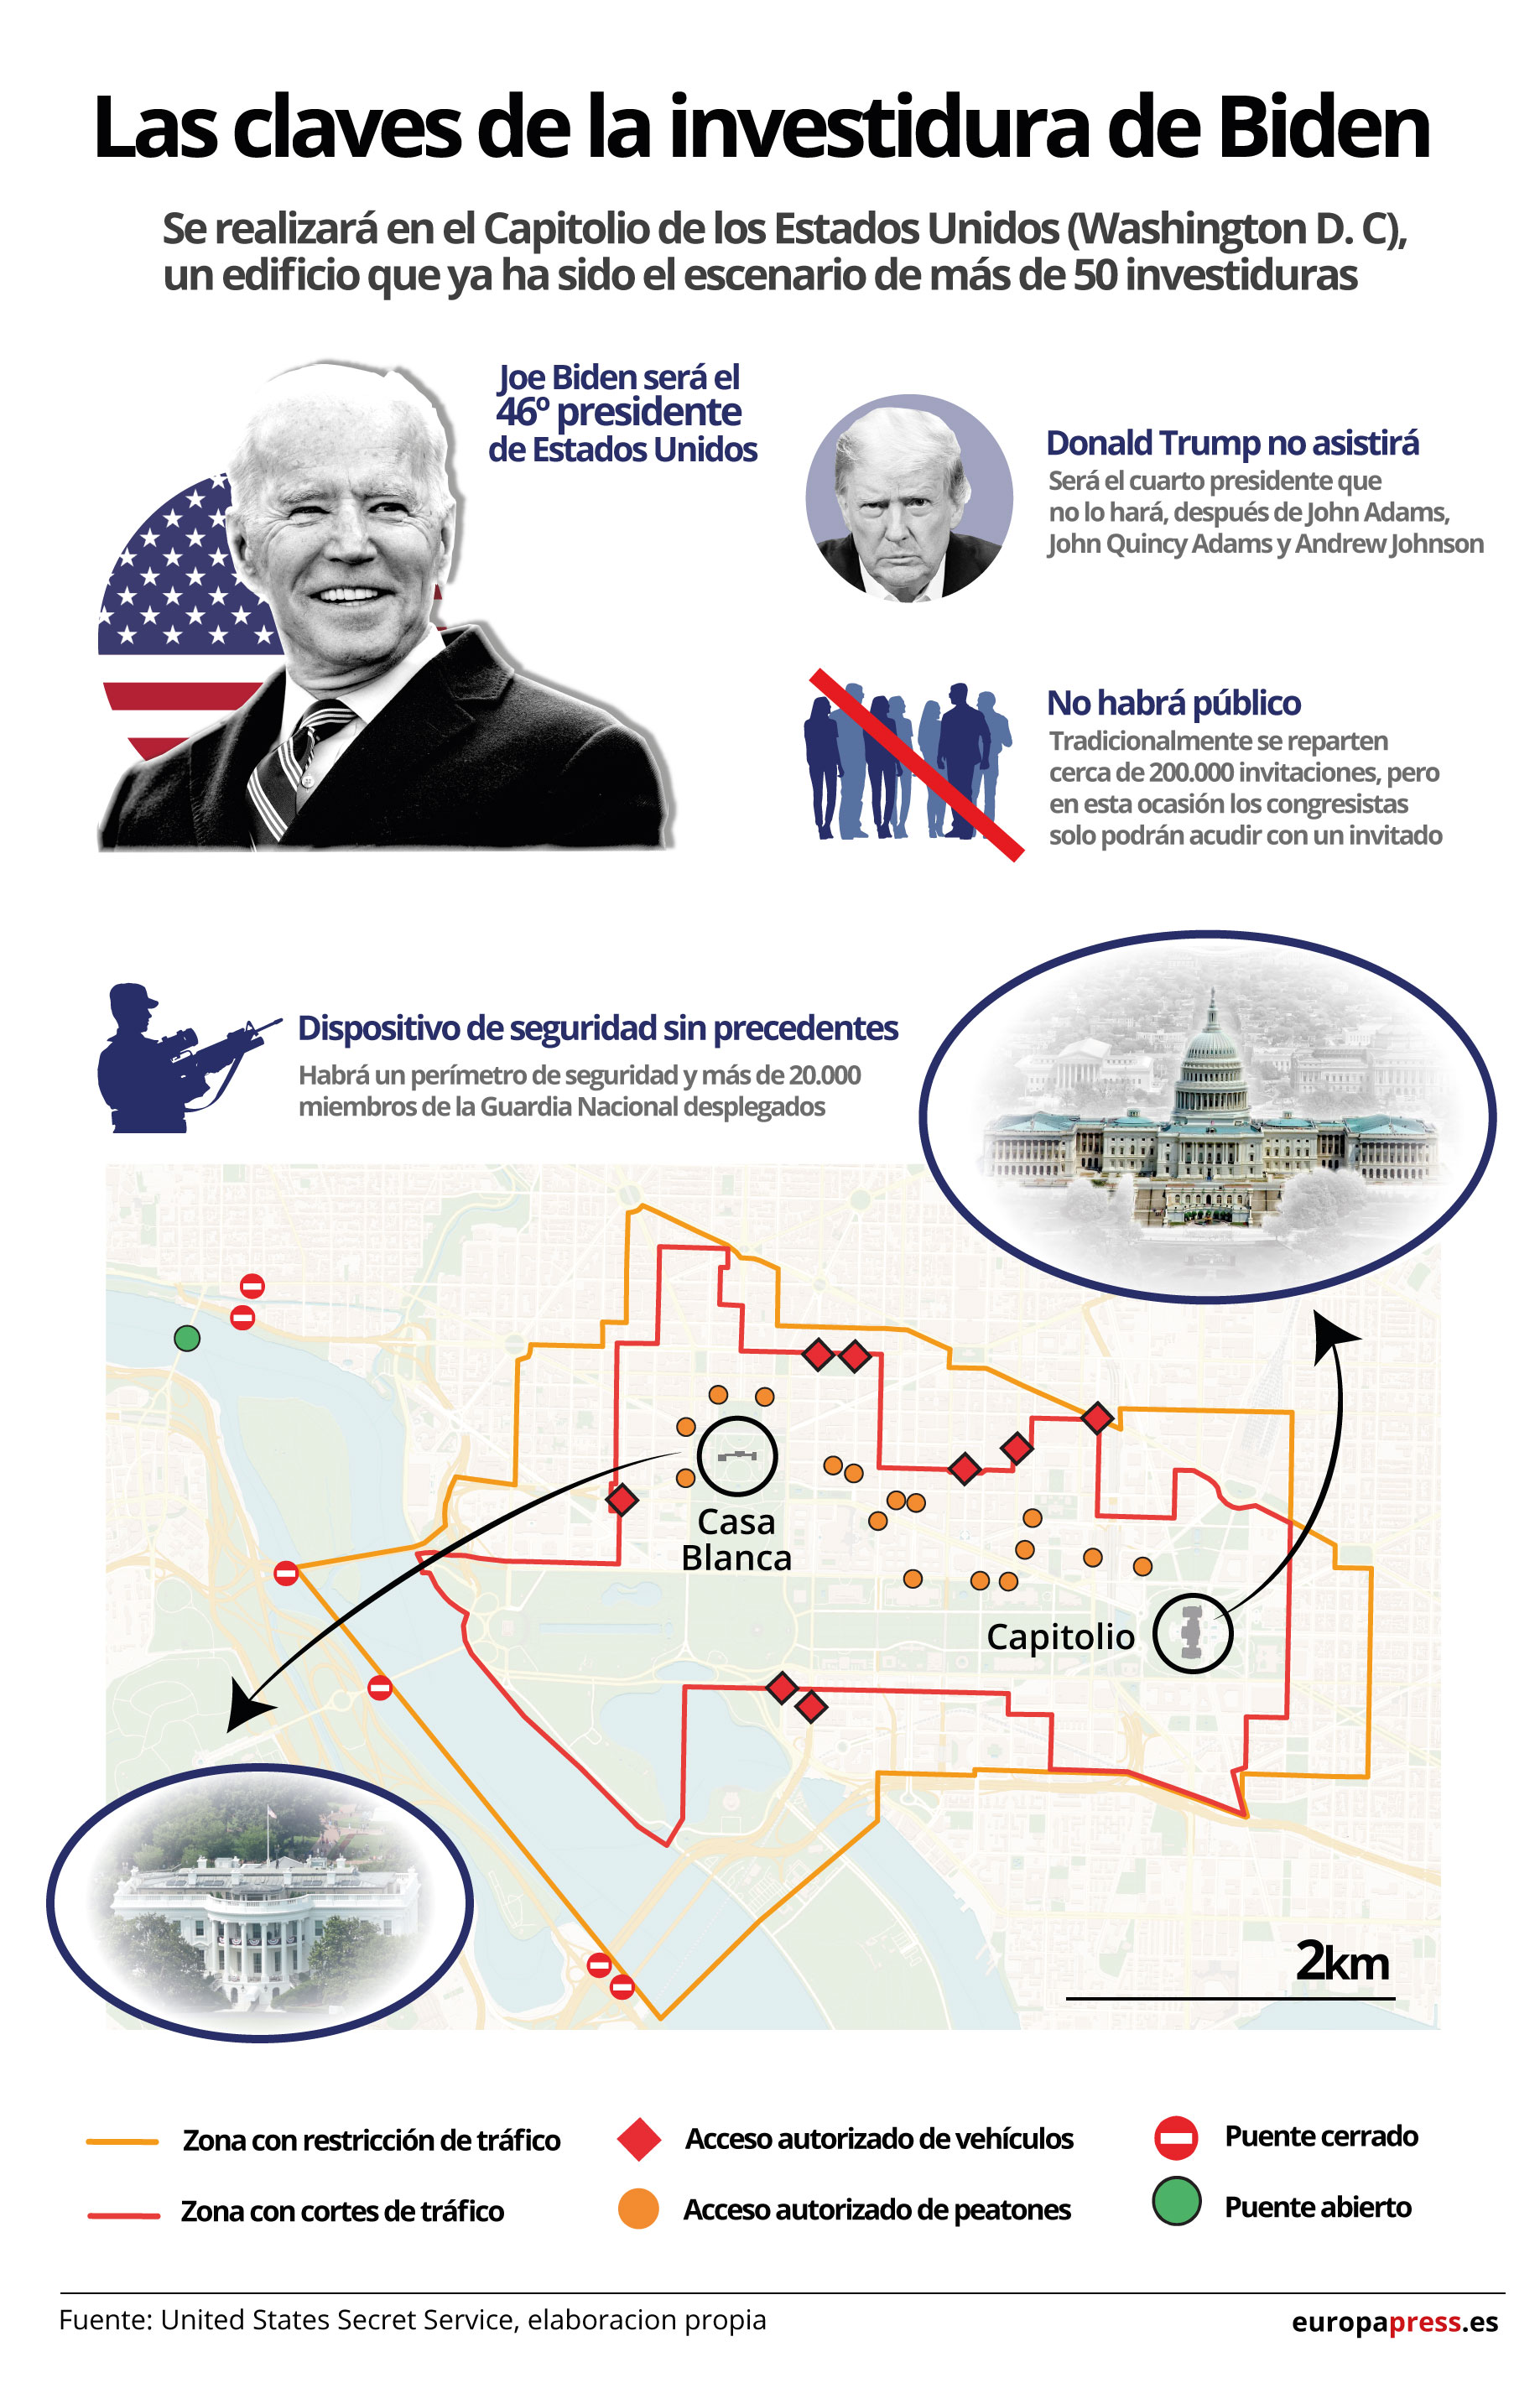 Infografía con claves y medidas de seguridad para la investidura de Joe Biden como presidente de Estados Unidos el 20 de enero de 2021 en el edificio del Capitolio (Washington D. C., Estados Unidos)